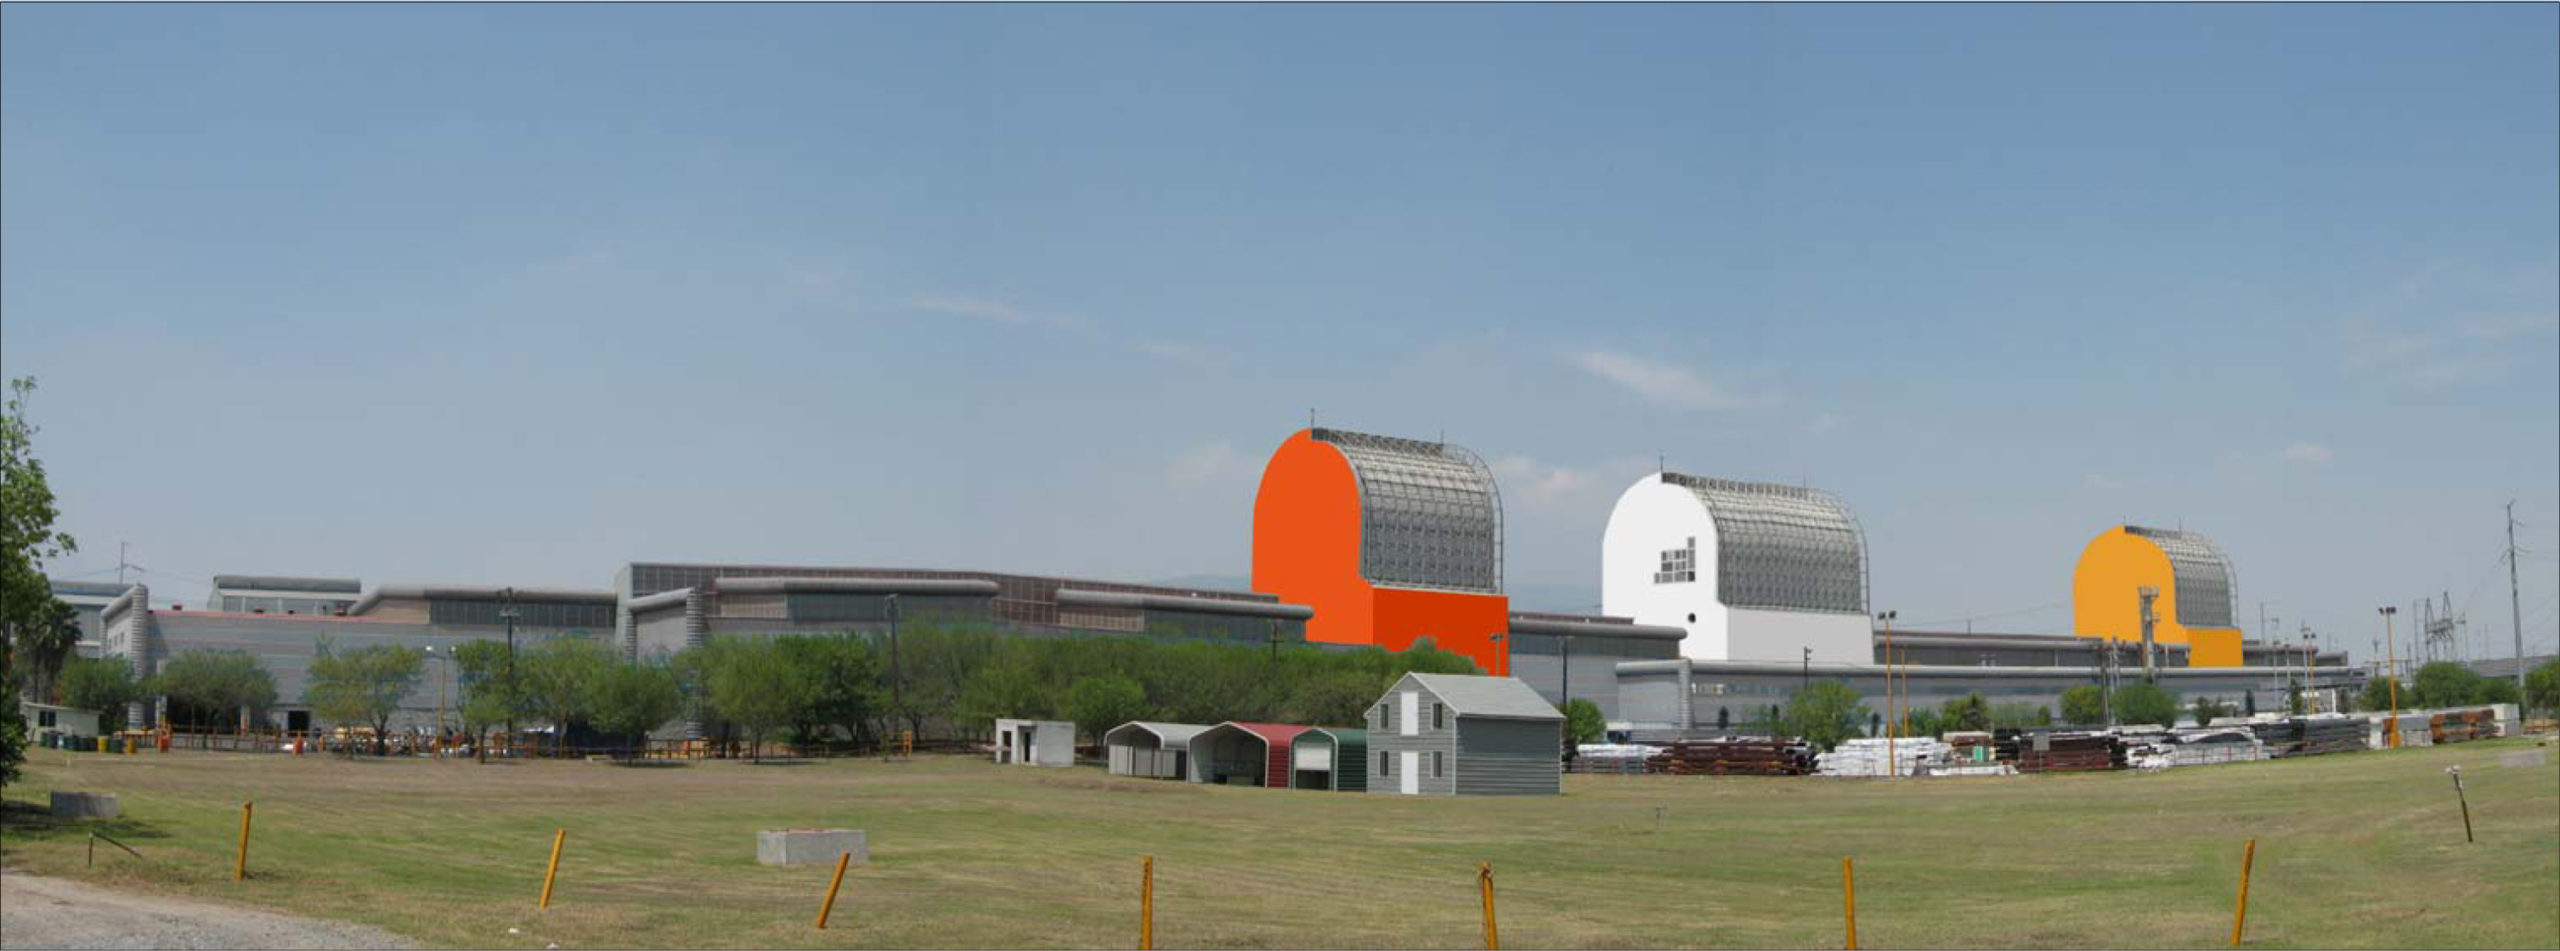 Ternium Hylsa Industrial Plant in Monterrey (ex Galvak), Mexico. Signing